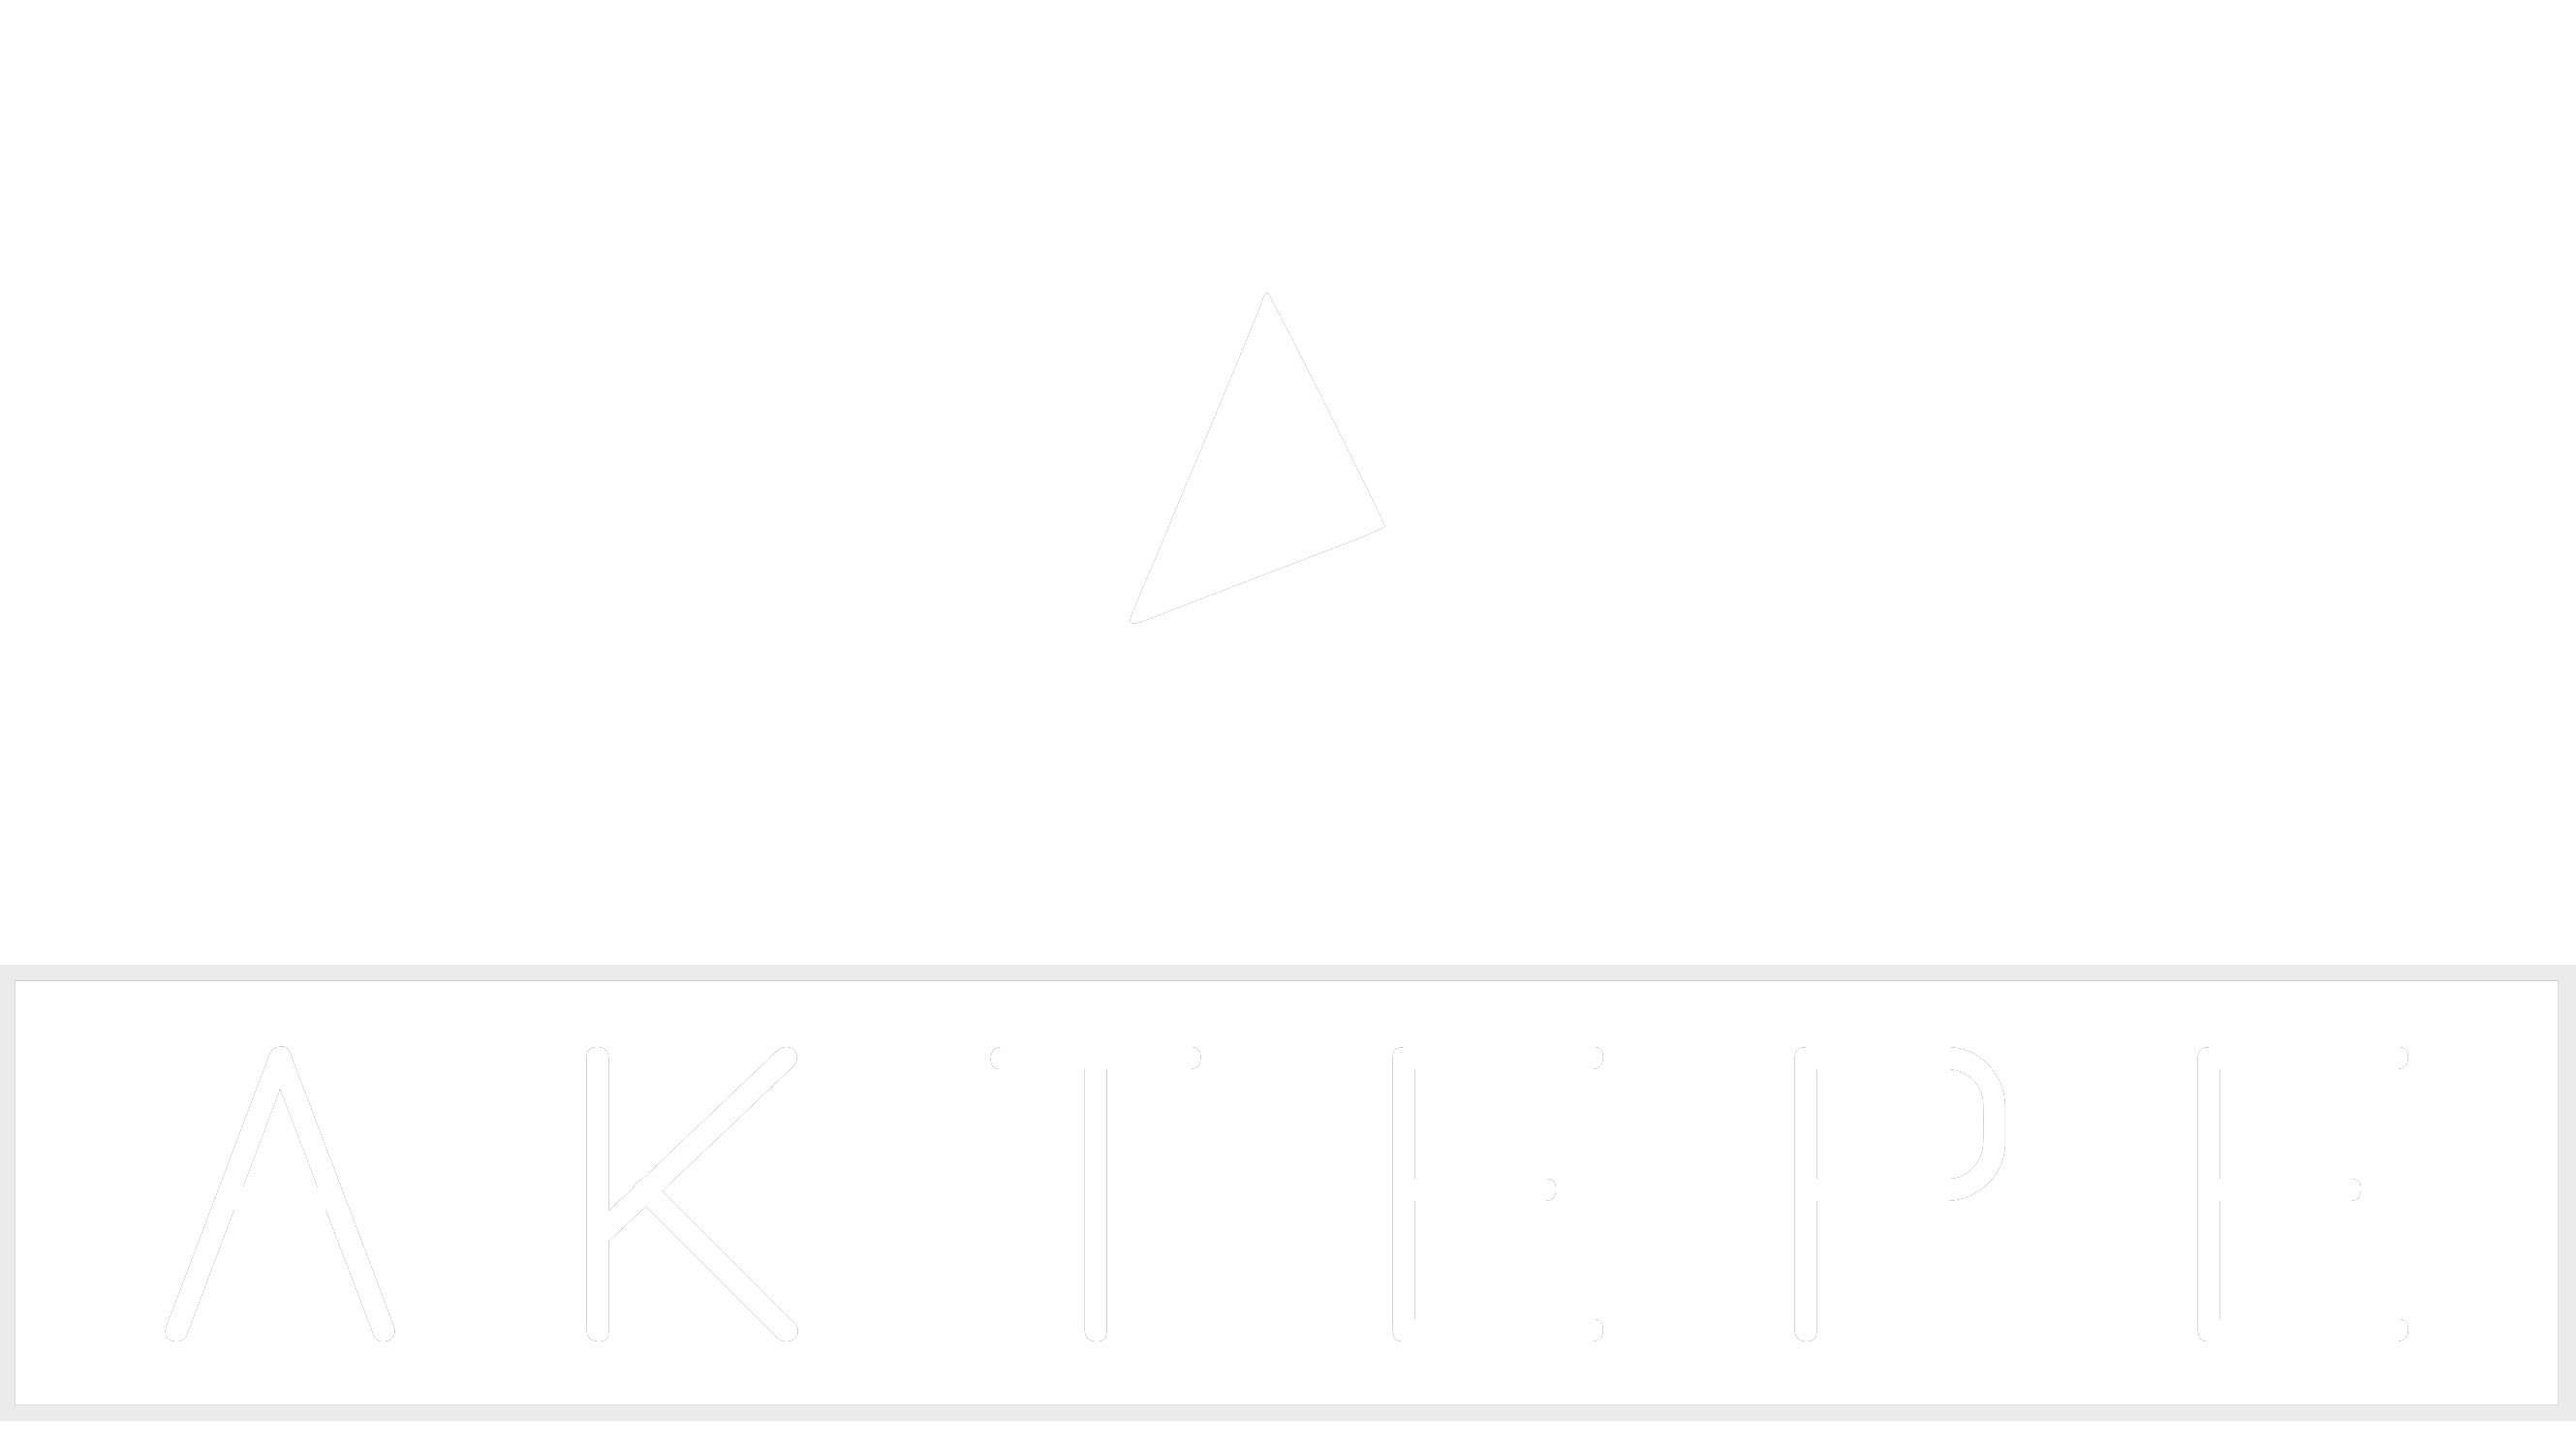 GLC SERİSİ - Aktepe Shop - Oto Müzik Görüntü Navigasyon Sistemleri ve Teyp Çerçevesi Satış Merkezi